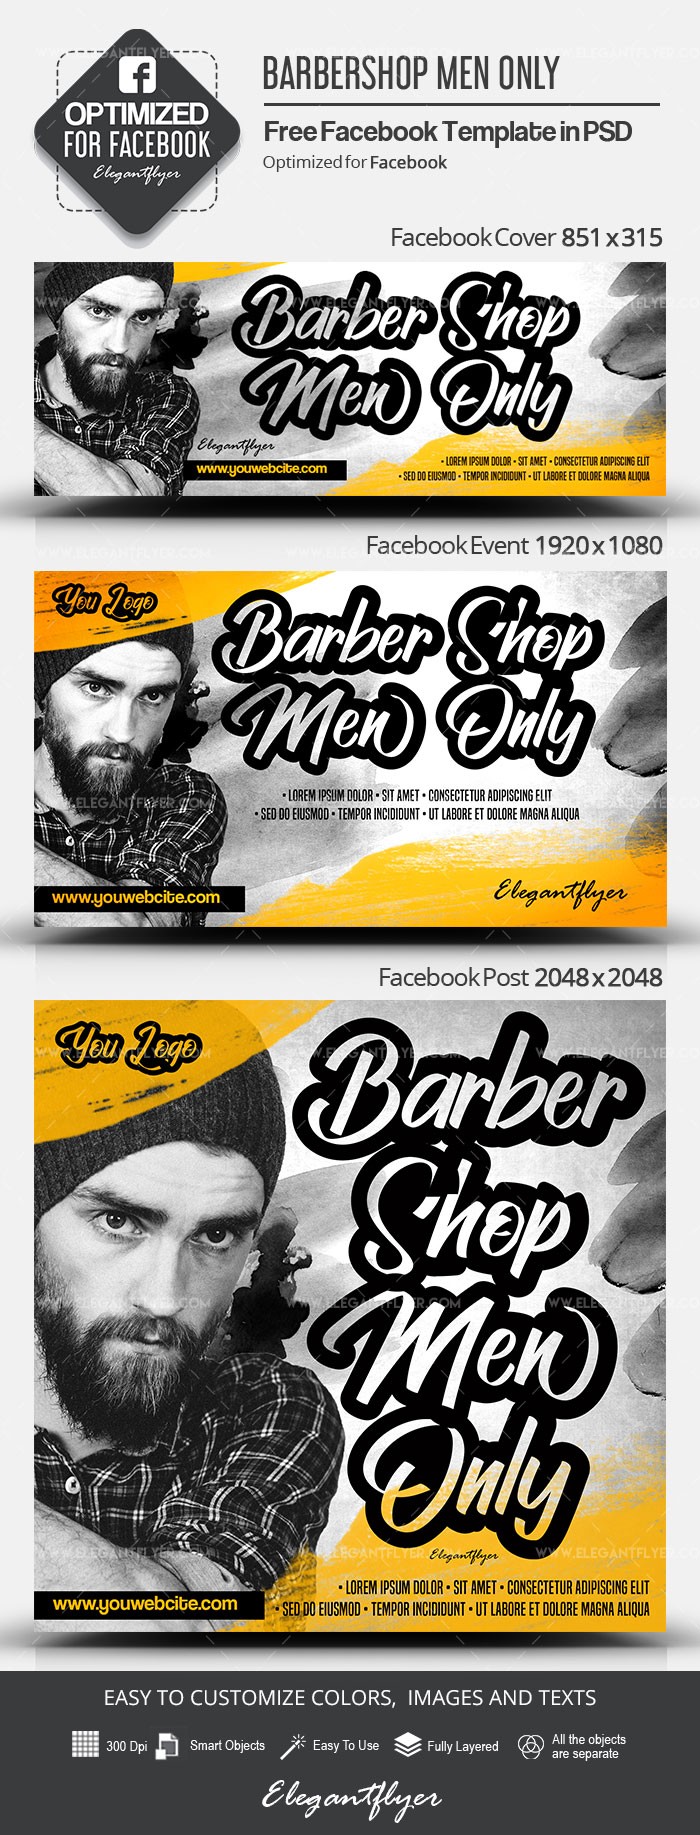 Barbearia Só para Homens no Facebook. by ElegantFlyer